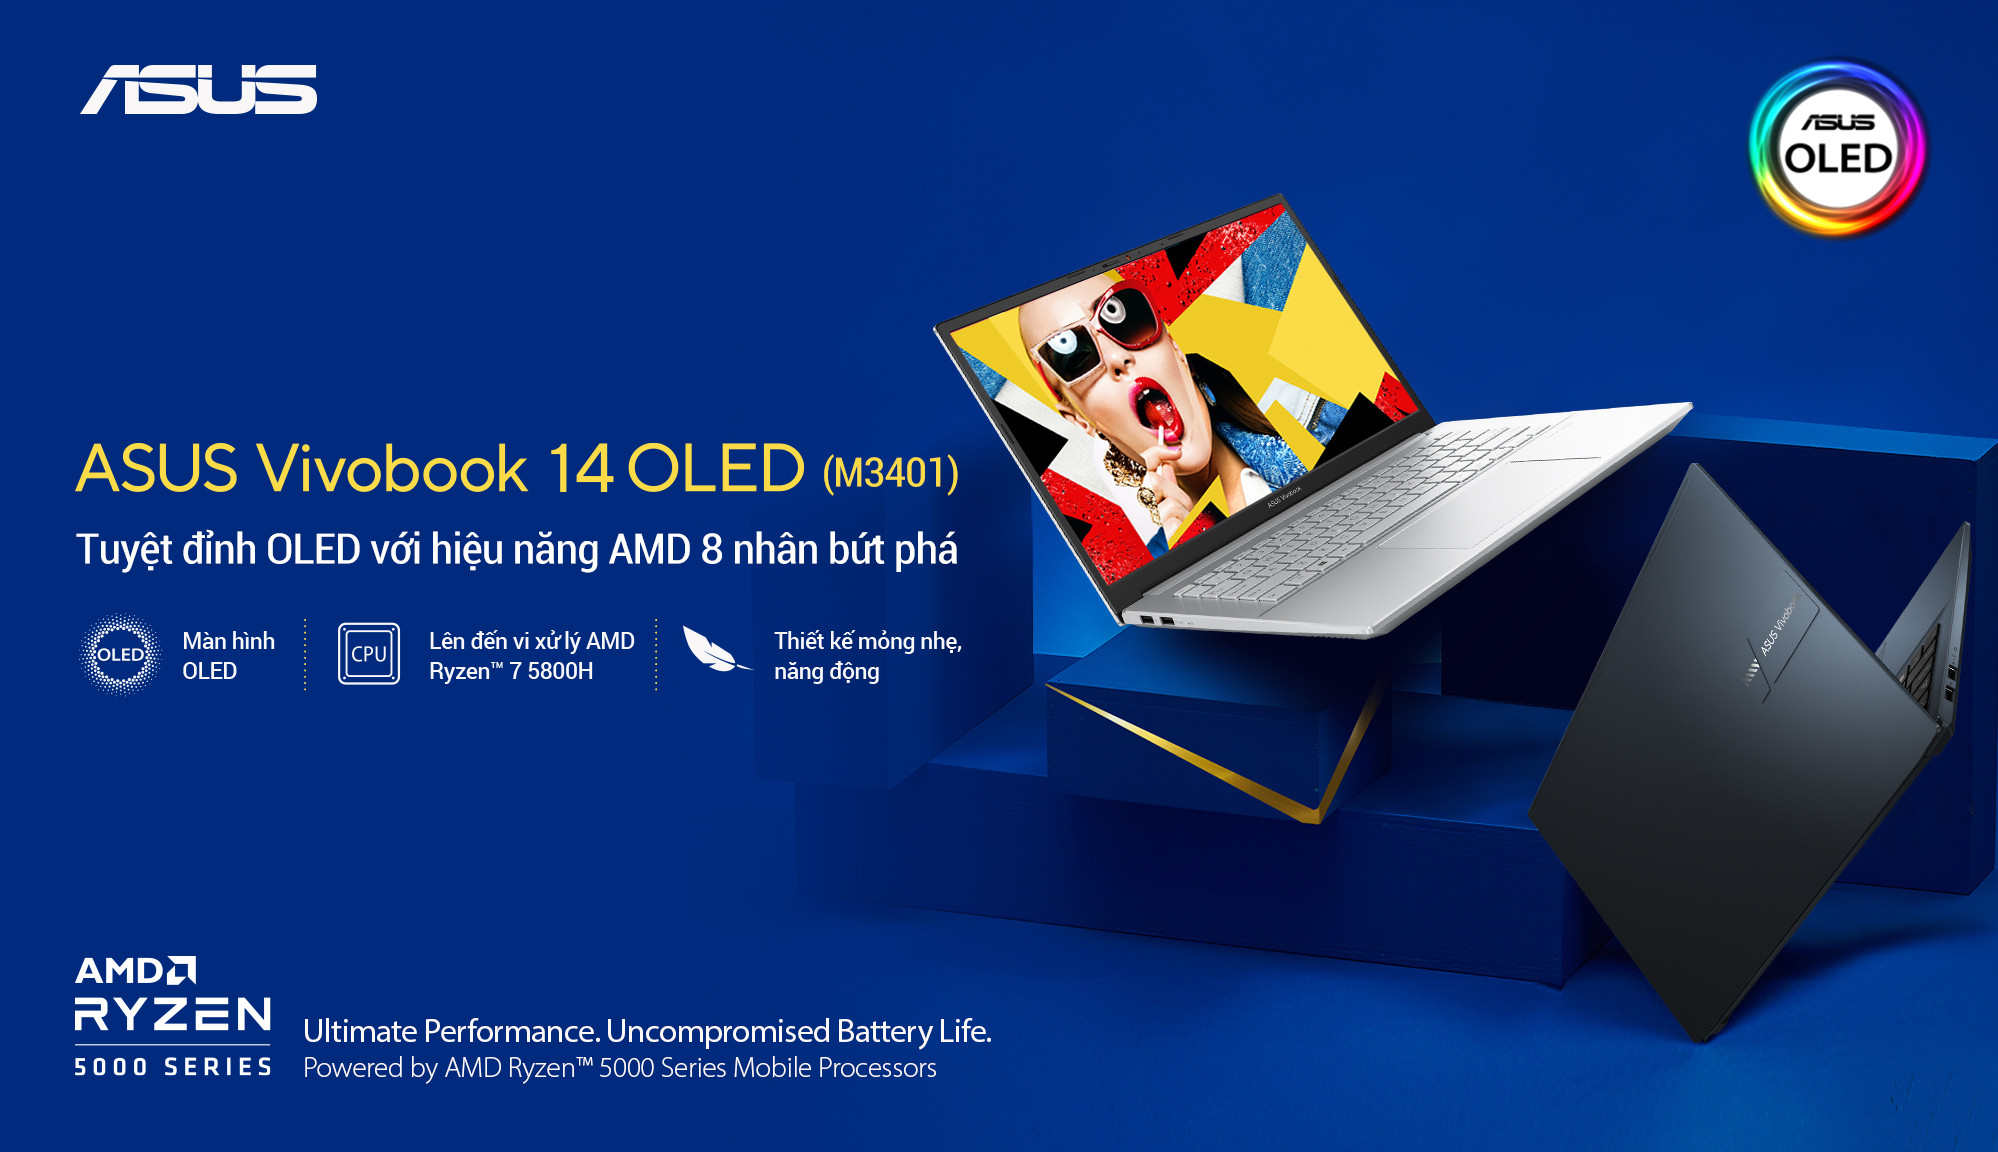 ASUS giới thiệu Vivobook 14 OLED (M3401), hiệu năng bức phá với chip AMD 8 nhân Ryzen 7 5800H